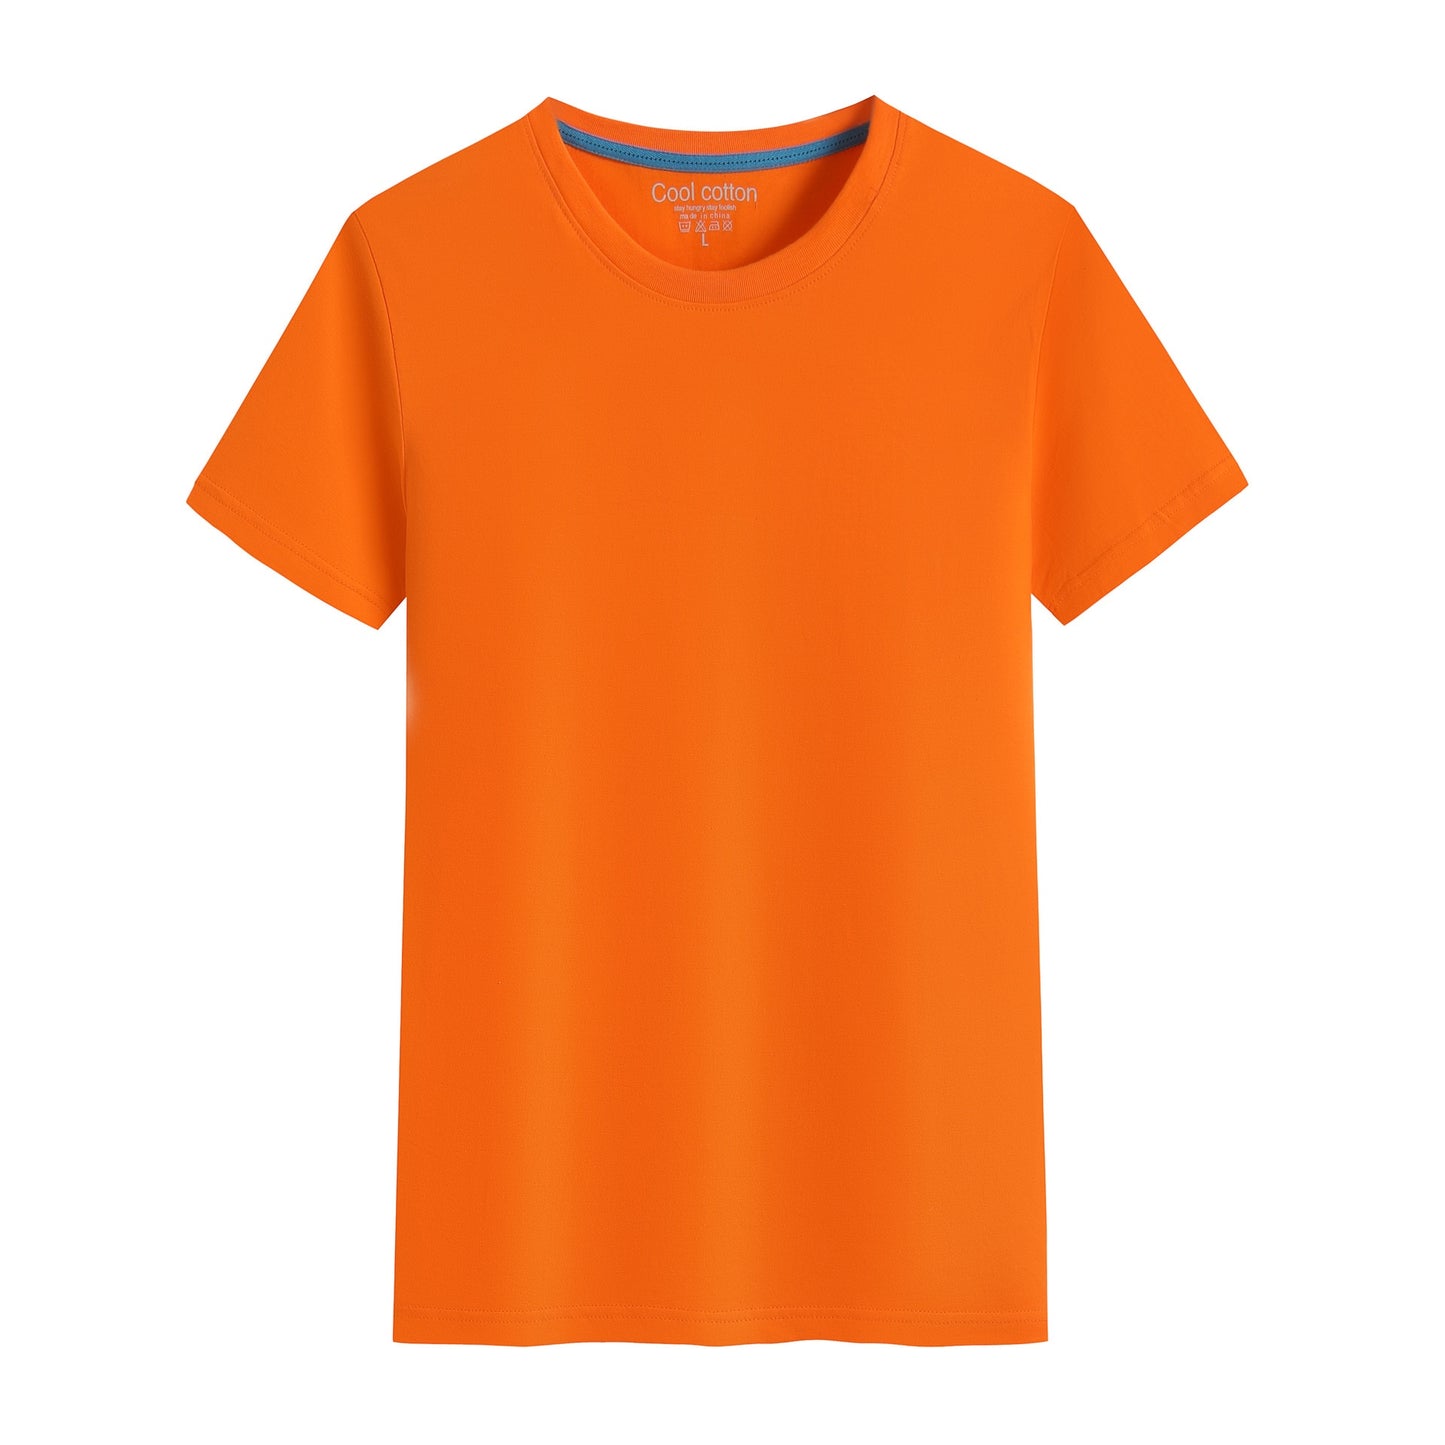 brandneue Baumwolle Herren T-Shirt reine Farbe